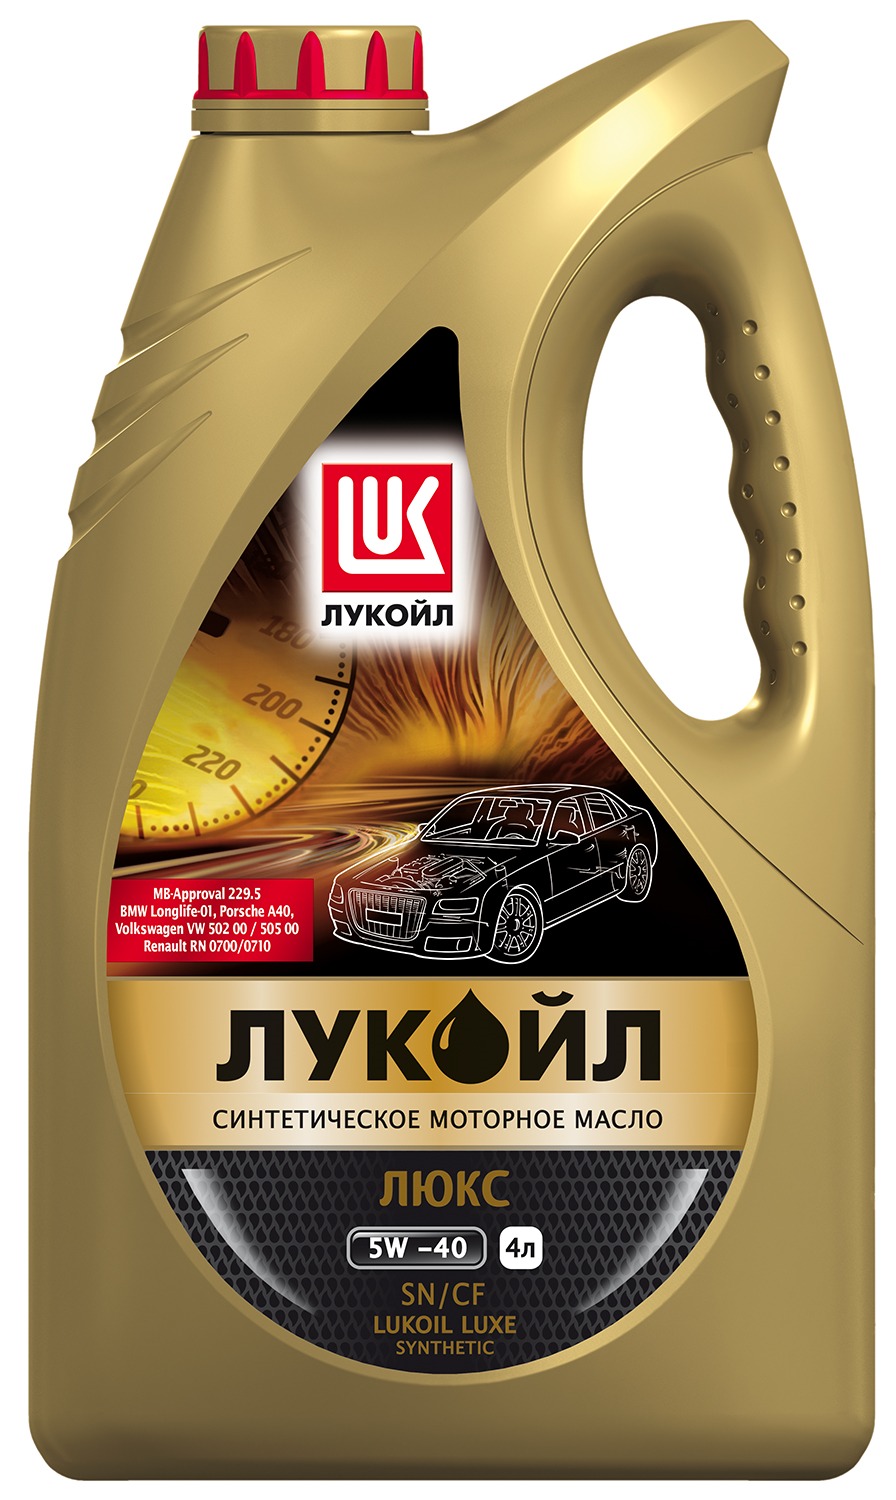 LUKOIL - ЛЮКС синтетическое SAE 5W-40, API SN/CF, 4 л